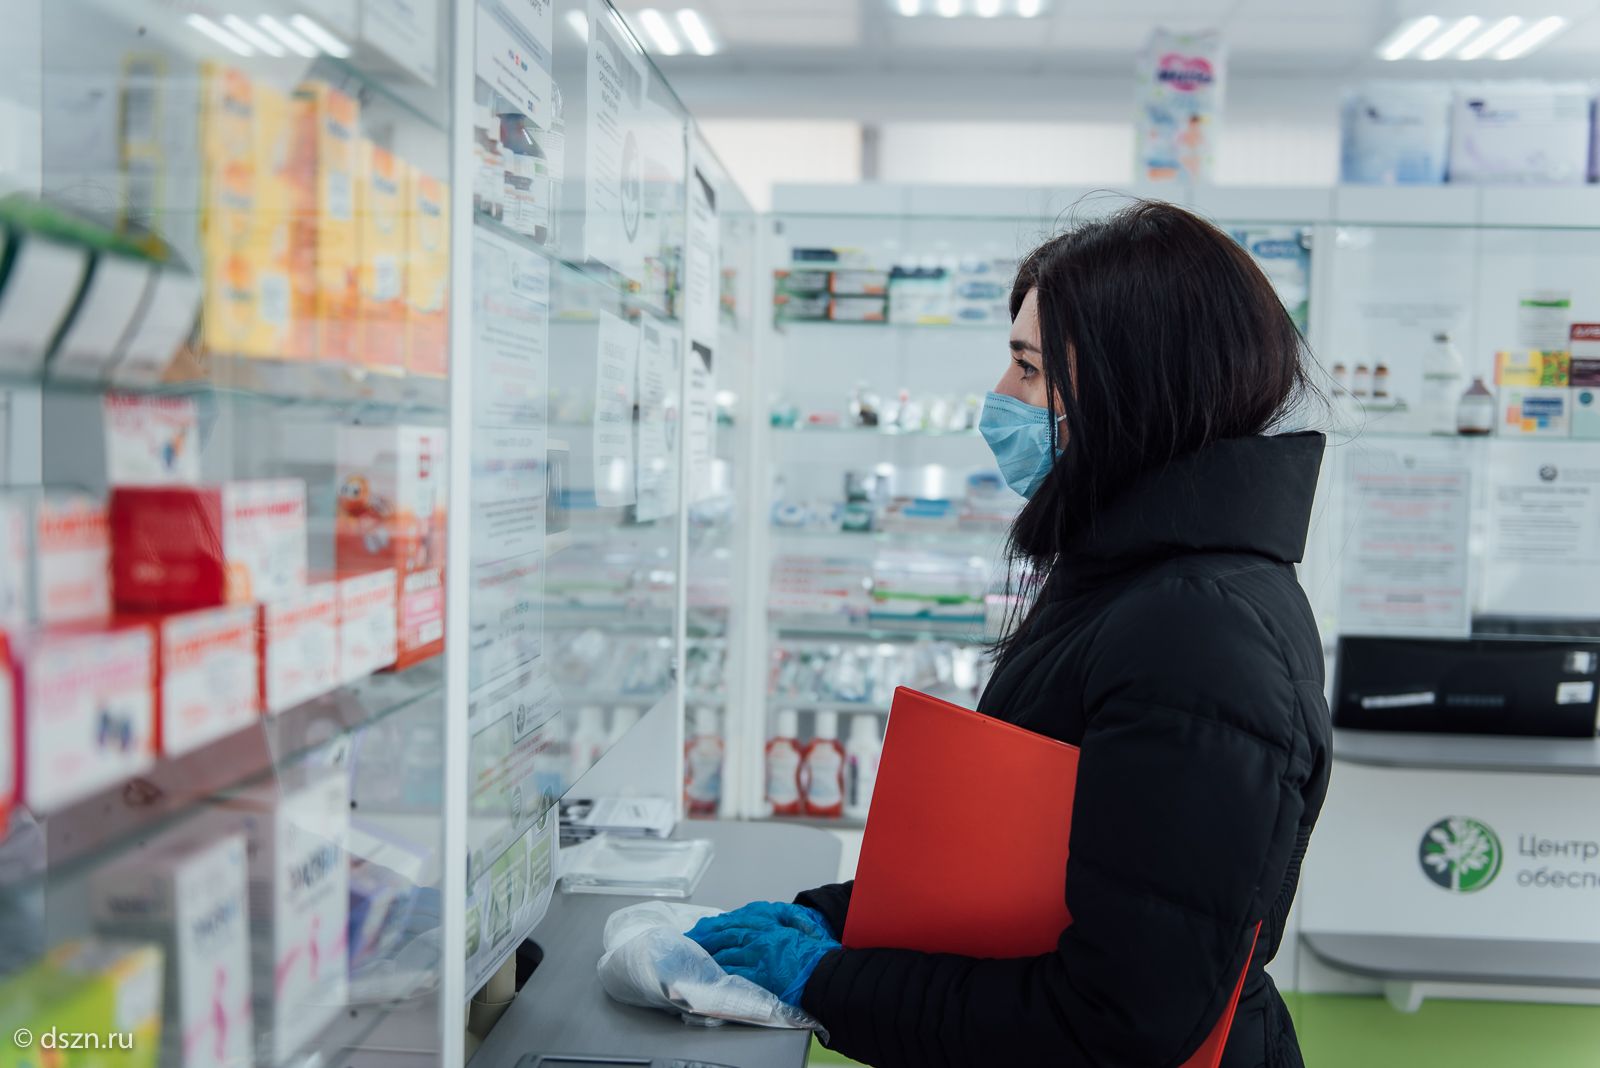 Аптечные сети Москвы запустили дистанционный заказ и доставки до двери квартиры безрецептурных лекарственных препаратов